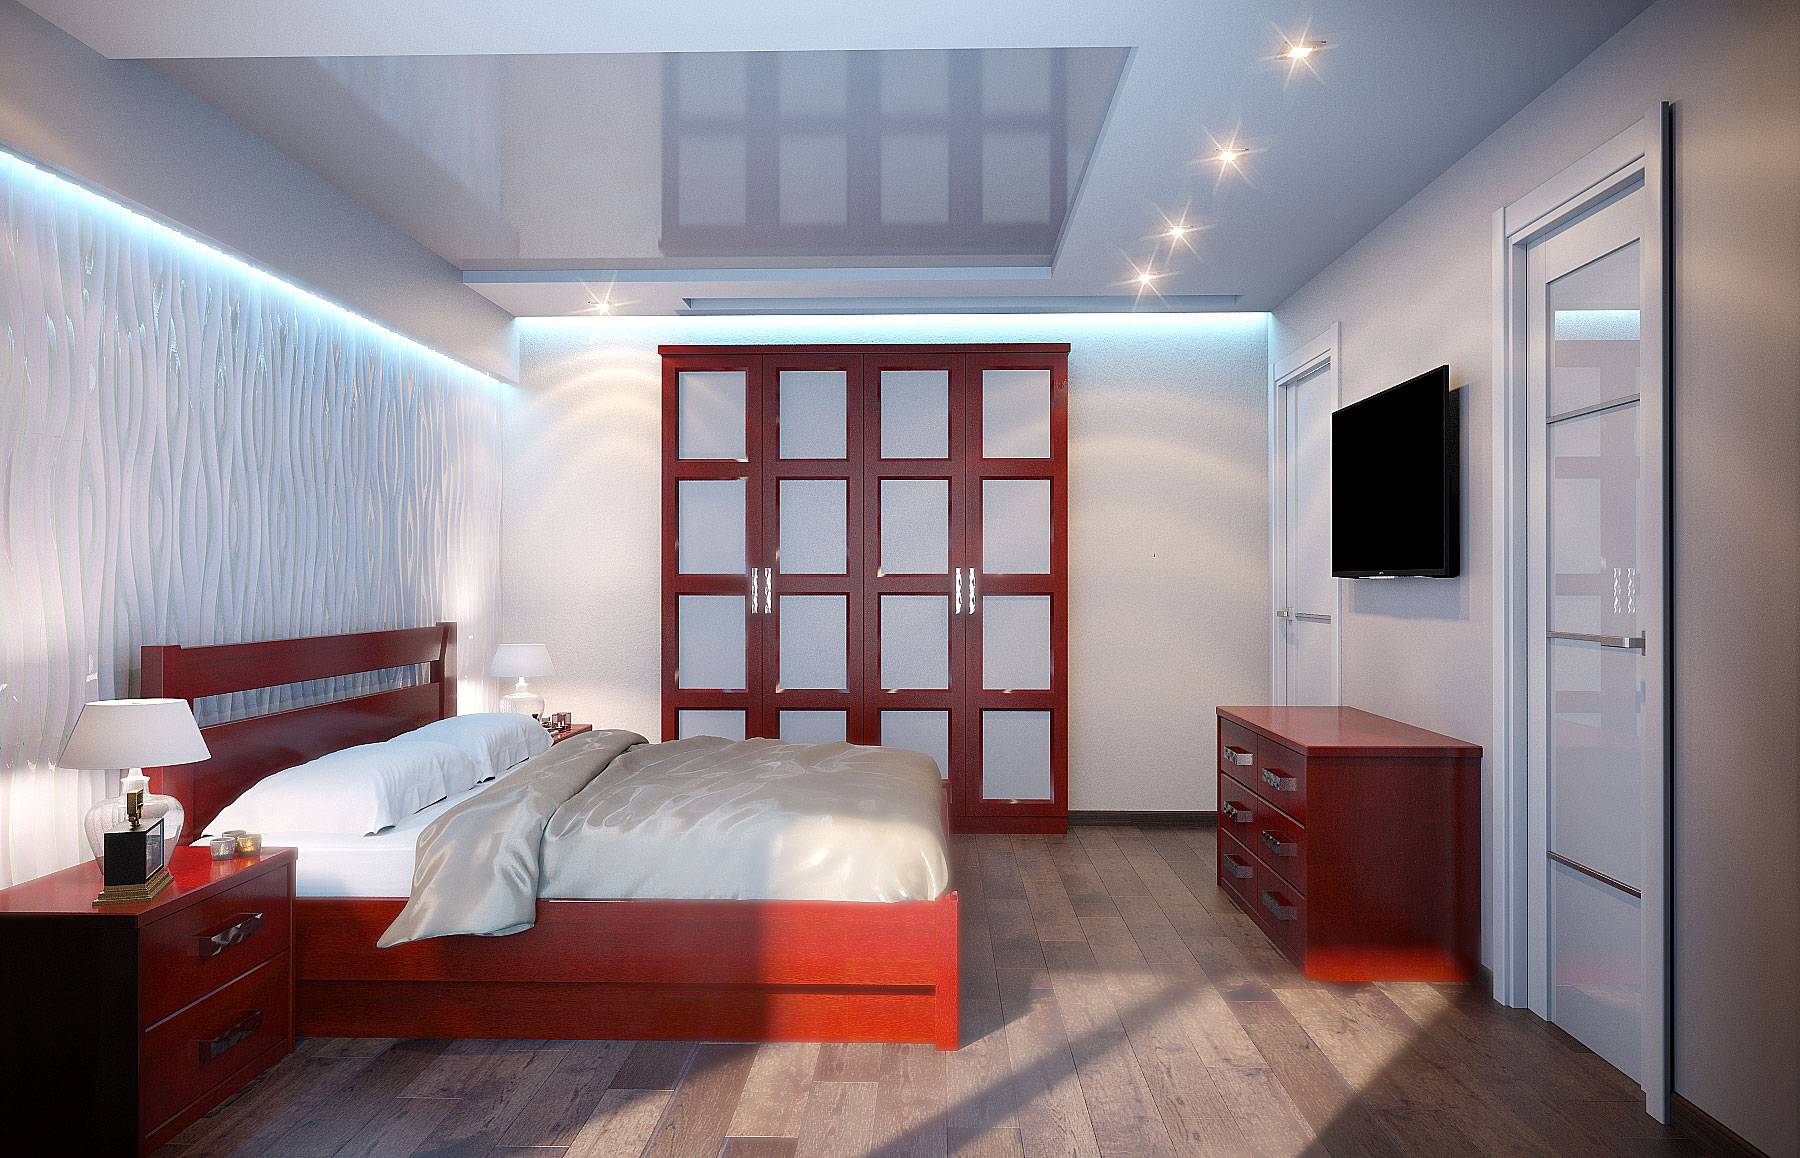 Дизайн маленькой спальни 9 кв м – фото интерьера маленьких спален 3 на 3